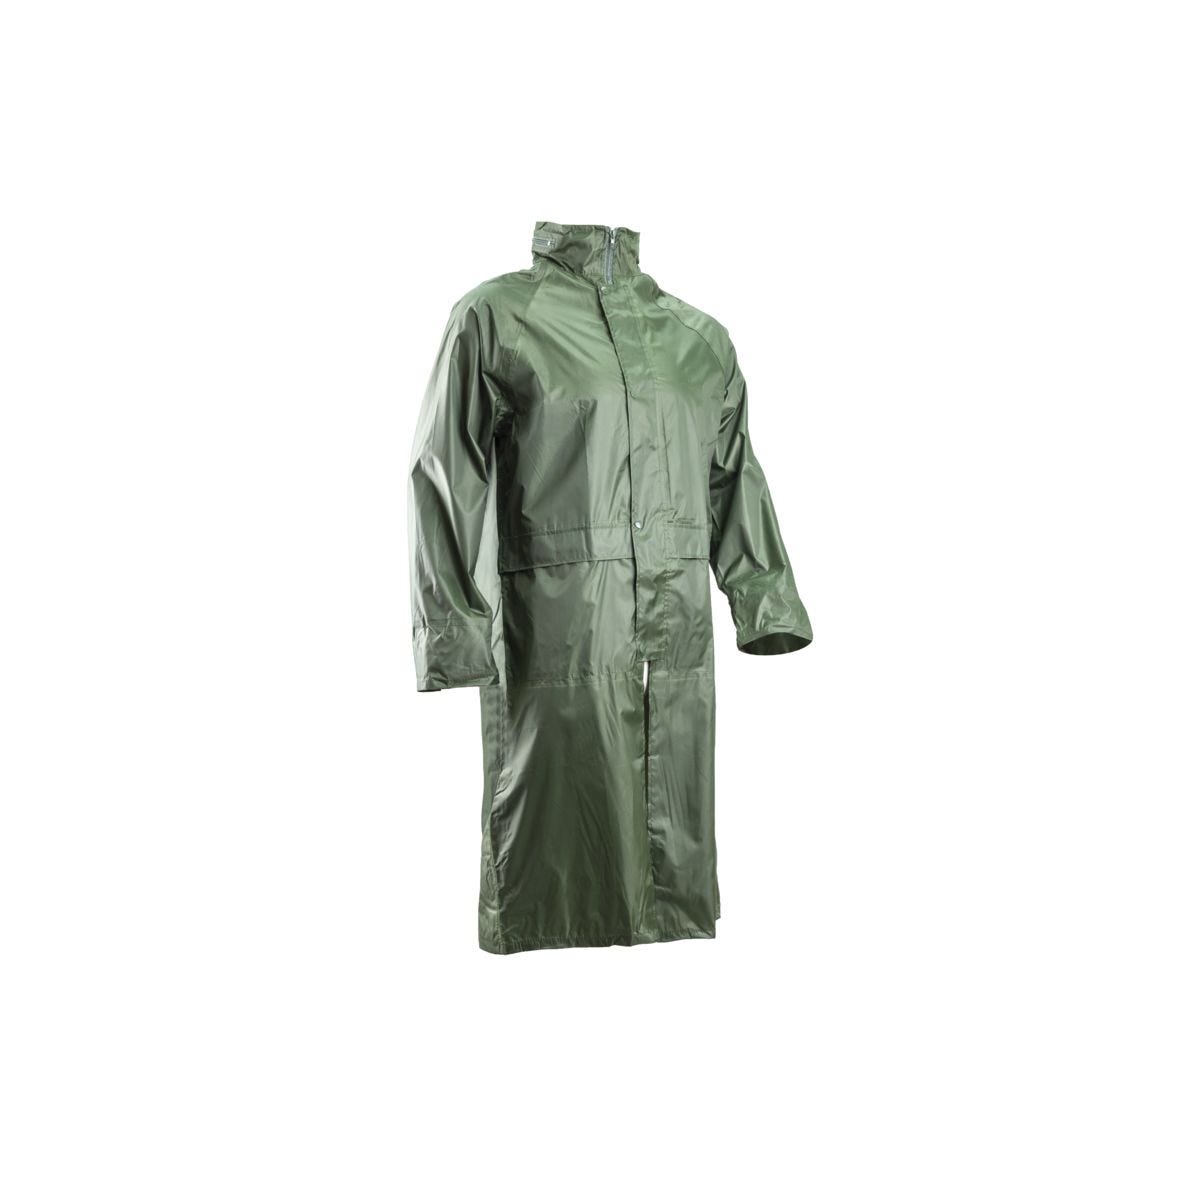 Manteau de pluie PVC, vert, 185g/m² - COVERGUARD - Taille L 0